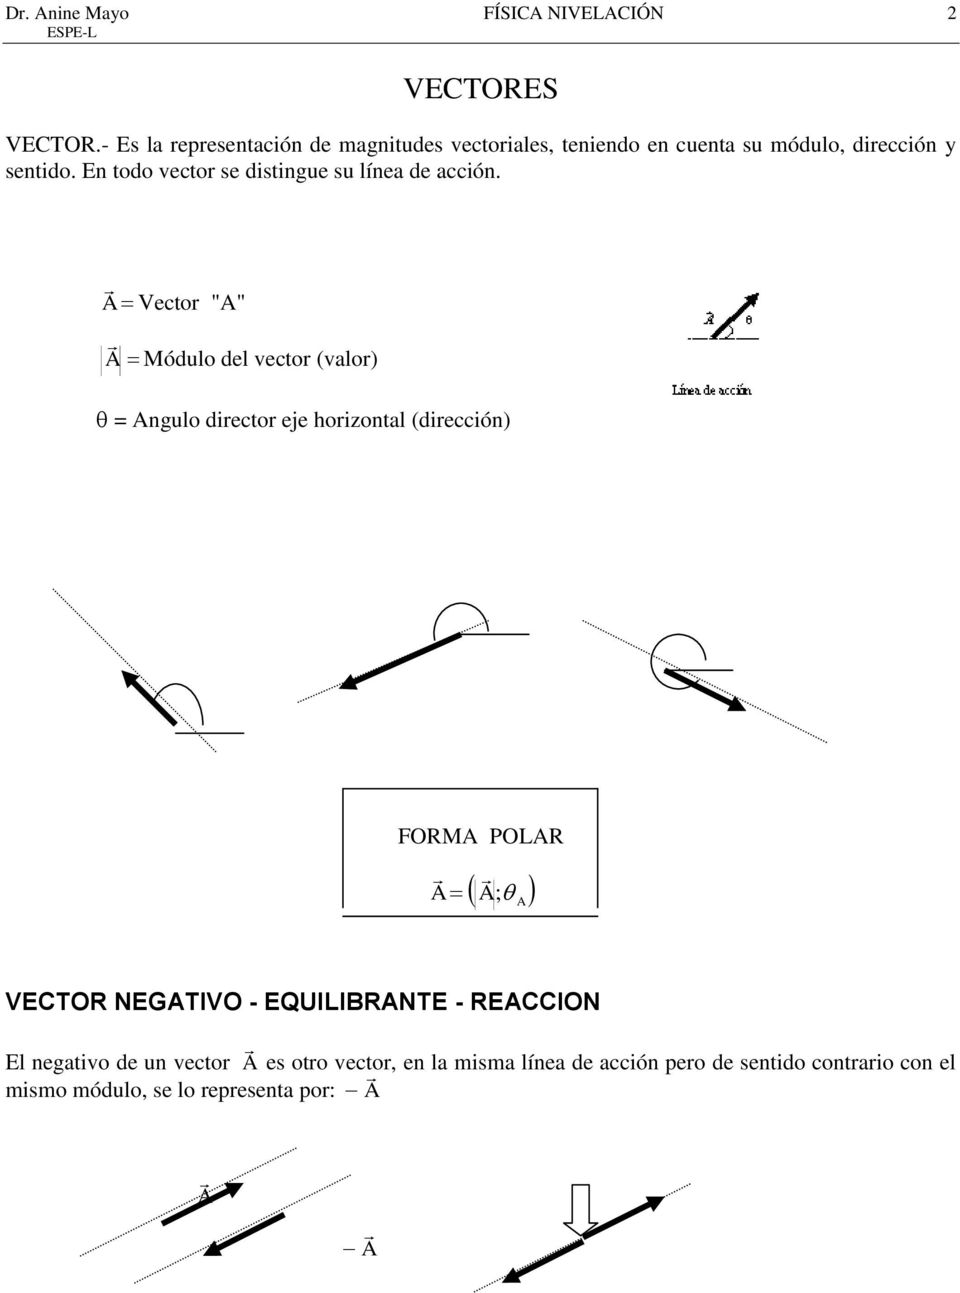 En todo vector se distingue su línea de acción.